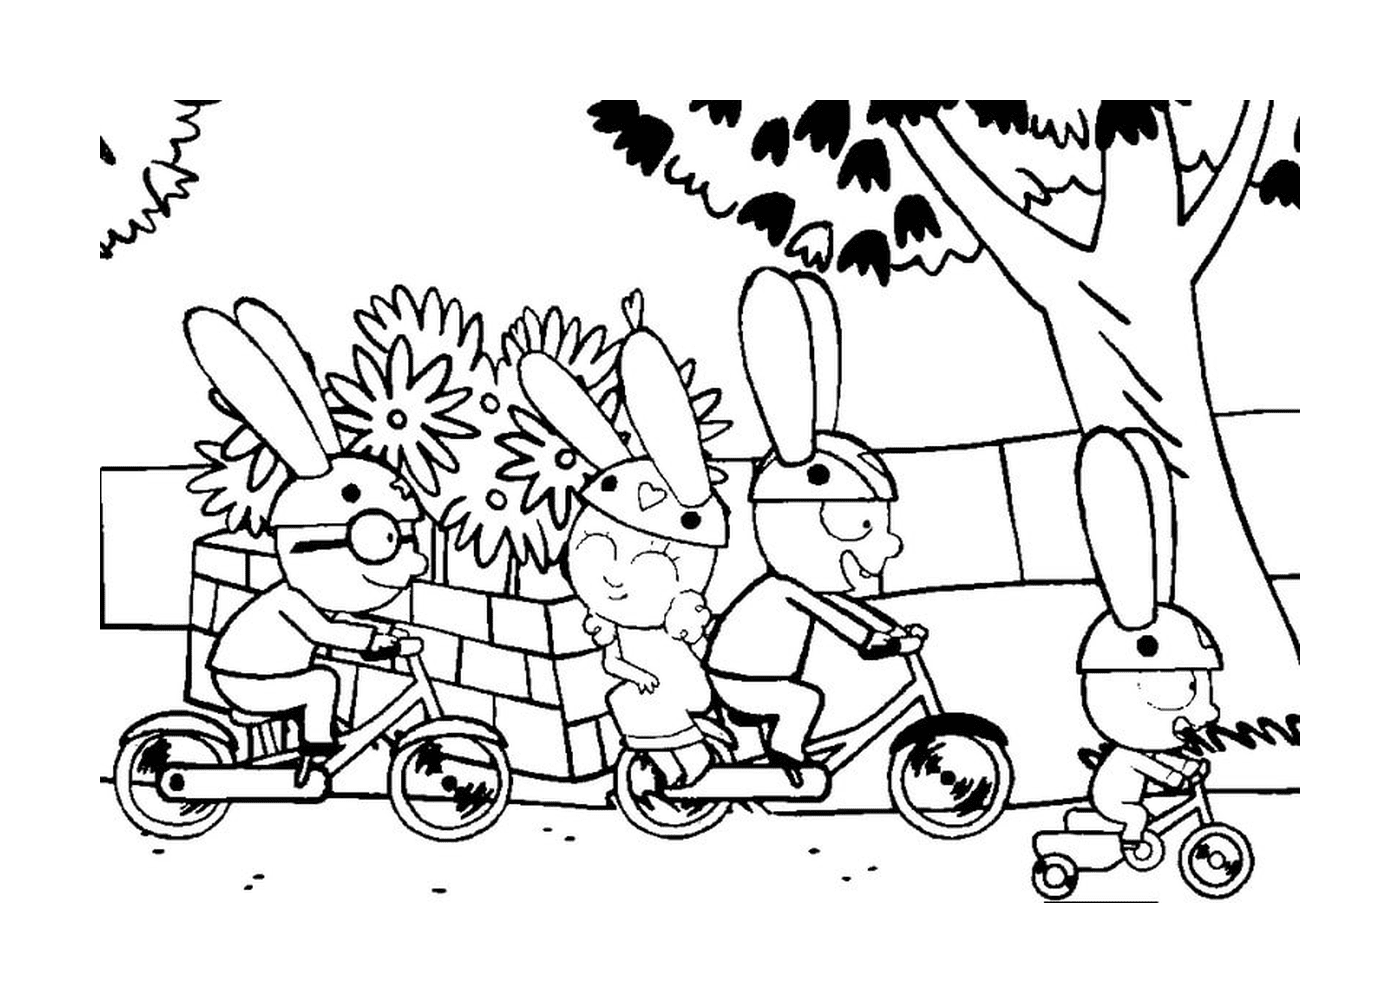  Simon y sus amigos en bicicleta 